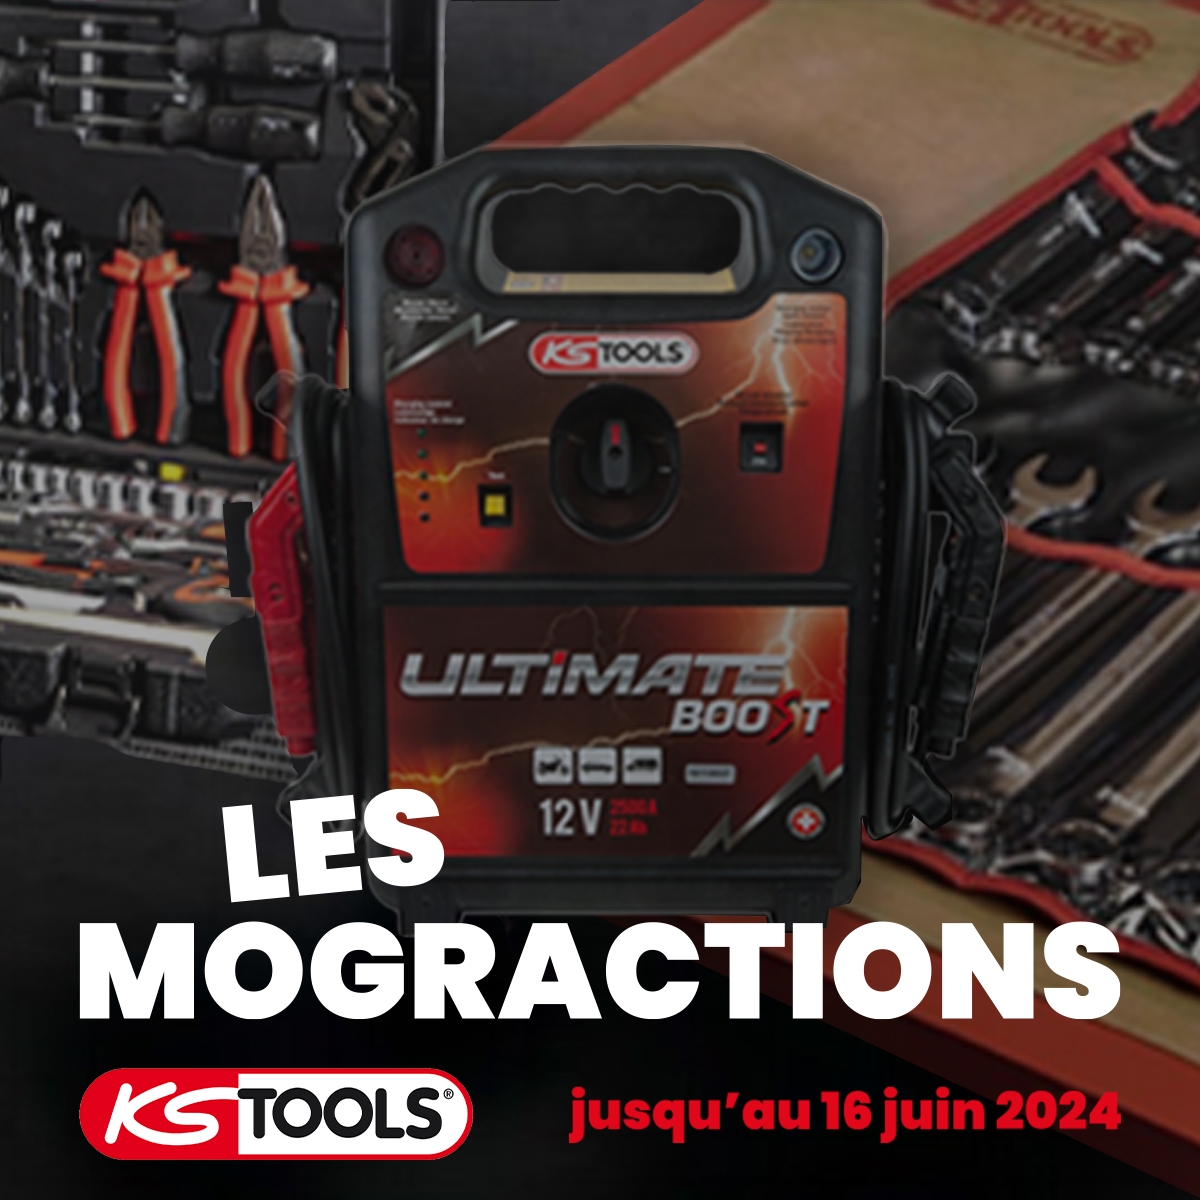 Les MOGRACTIONS x Ks Tools